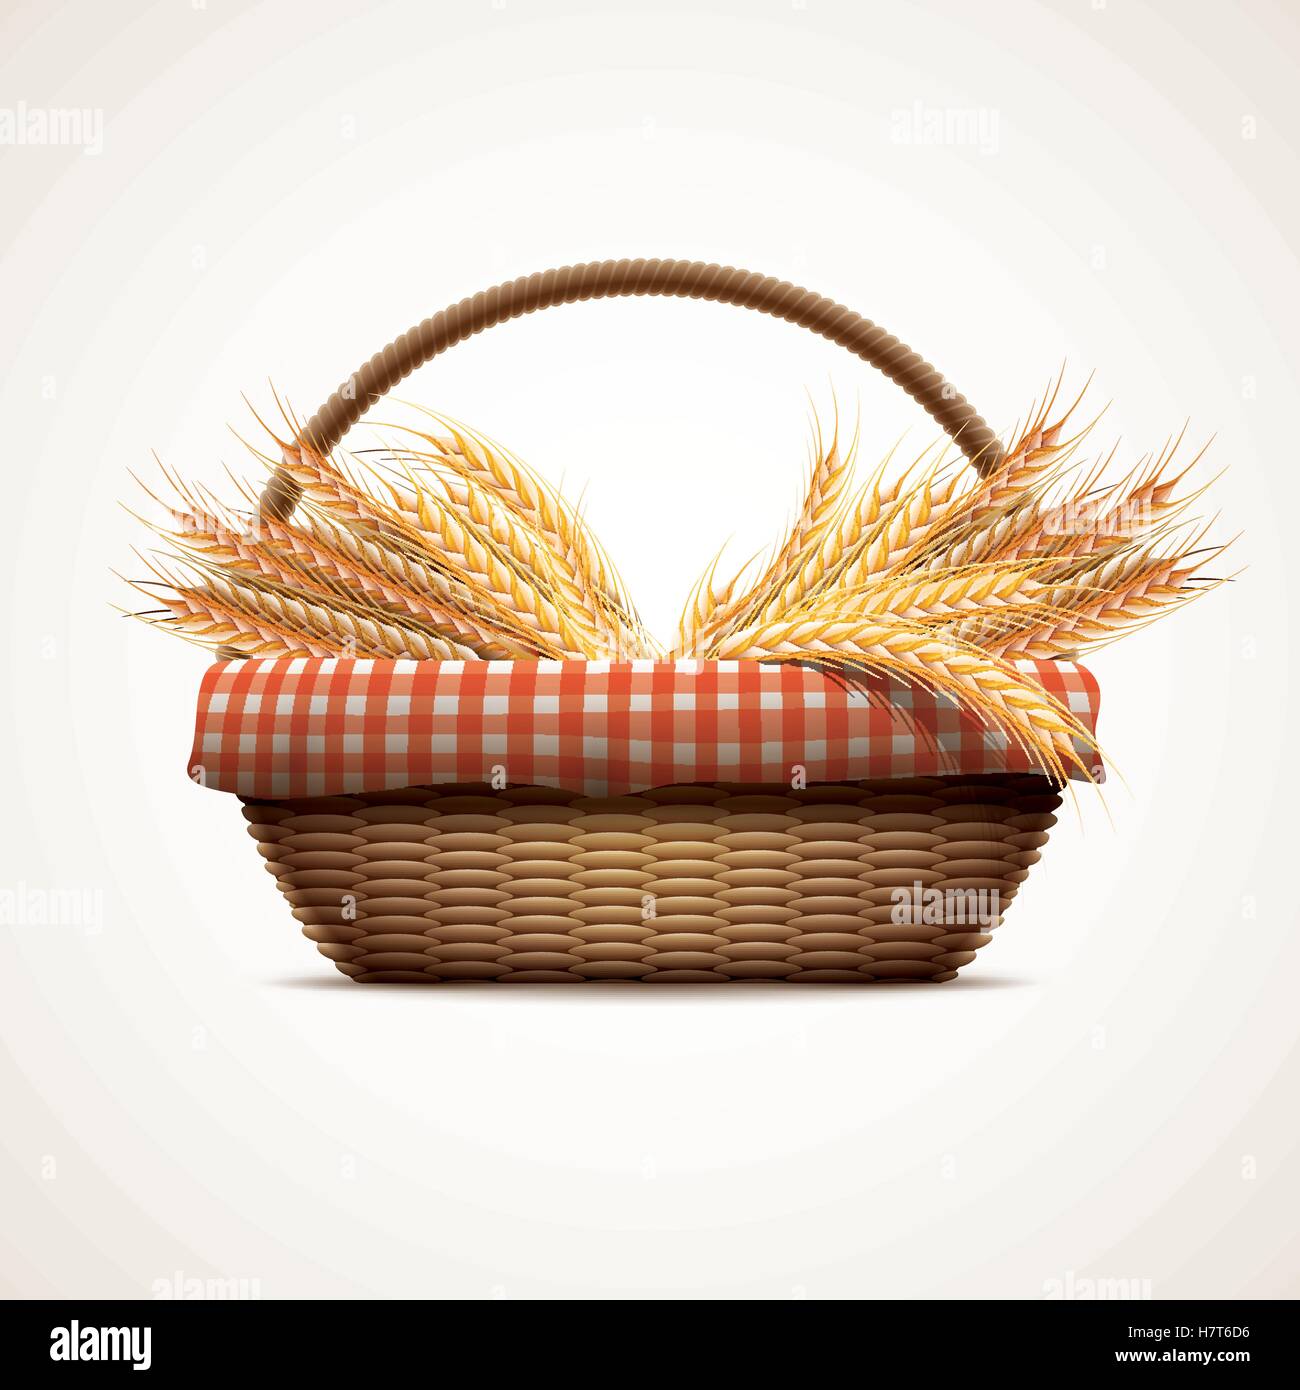 Wheat in wicker basket Stock Vector